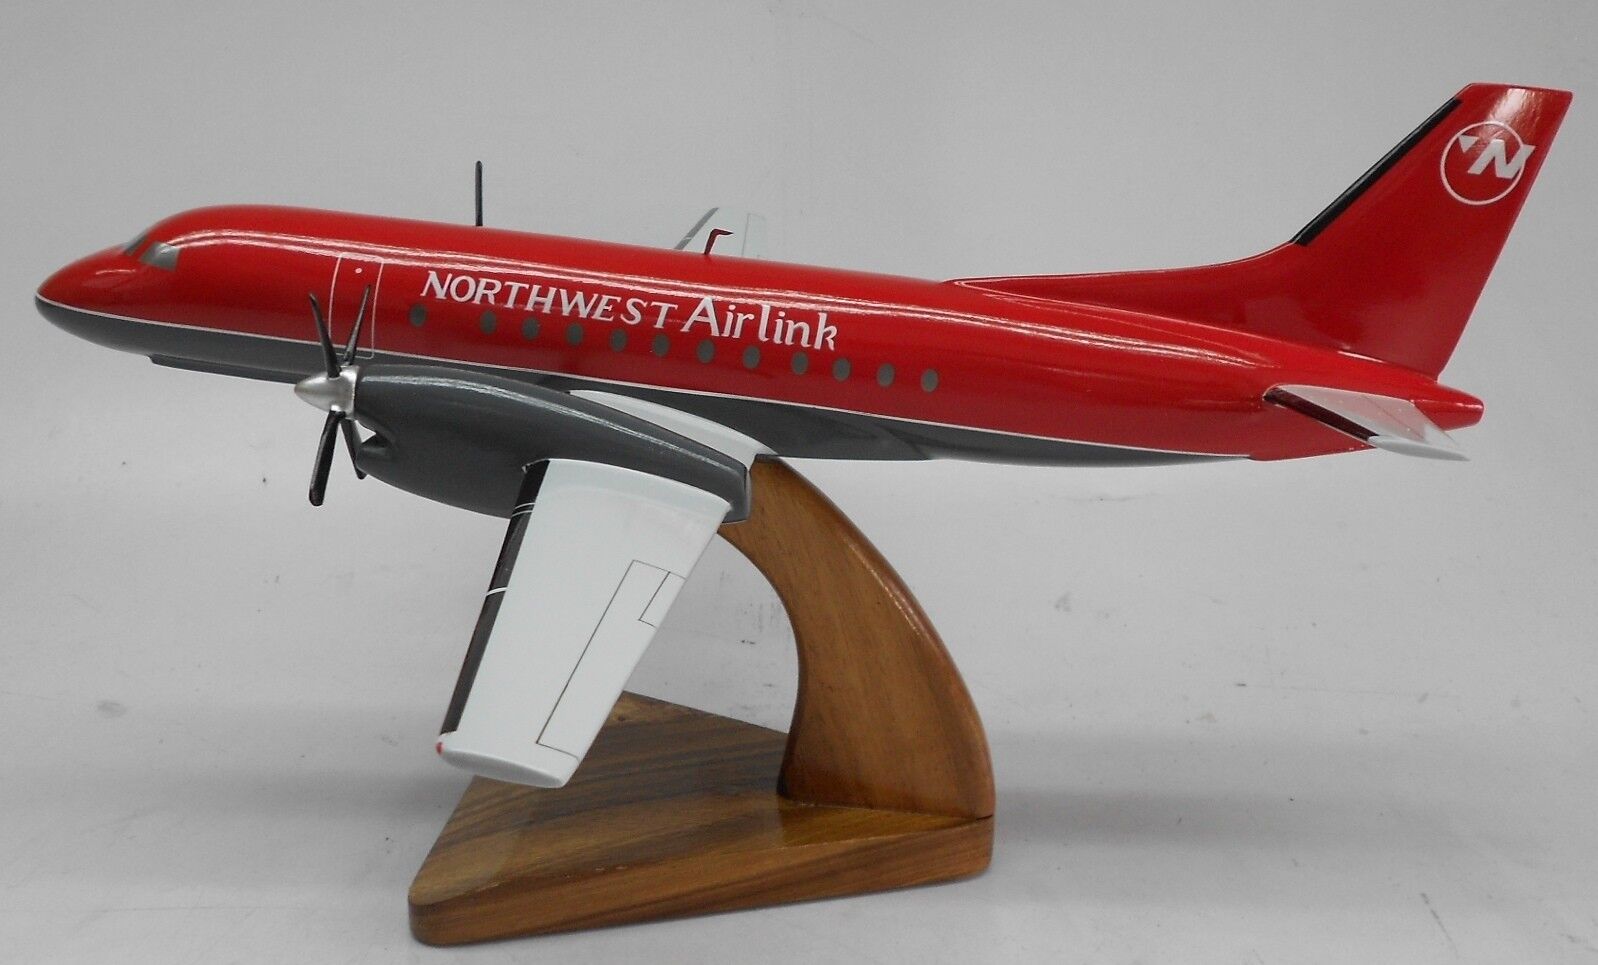 Saab 340 Northwest Airlink Airplane Desktop Wood Model Regular  